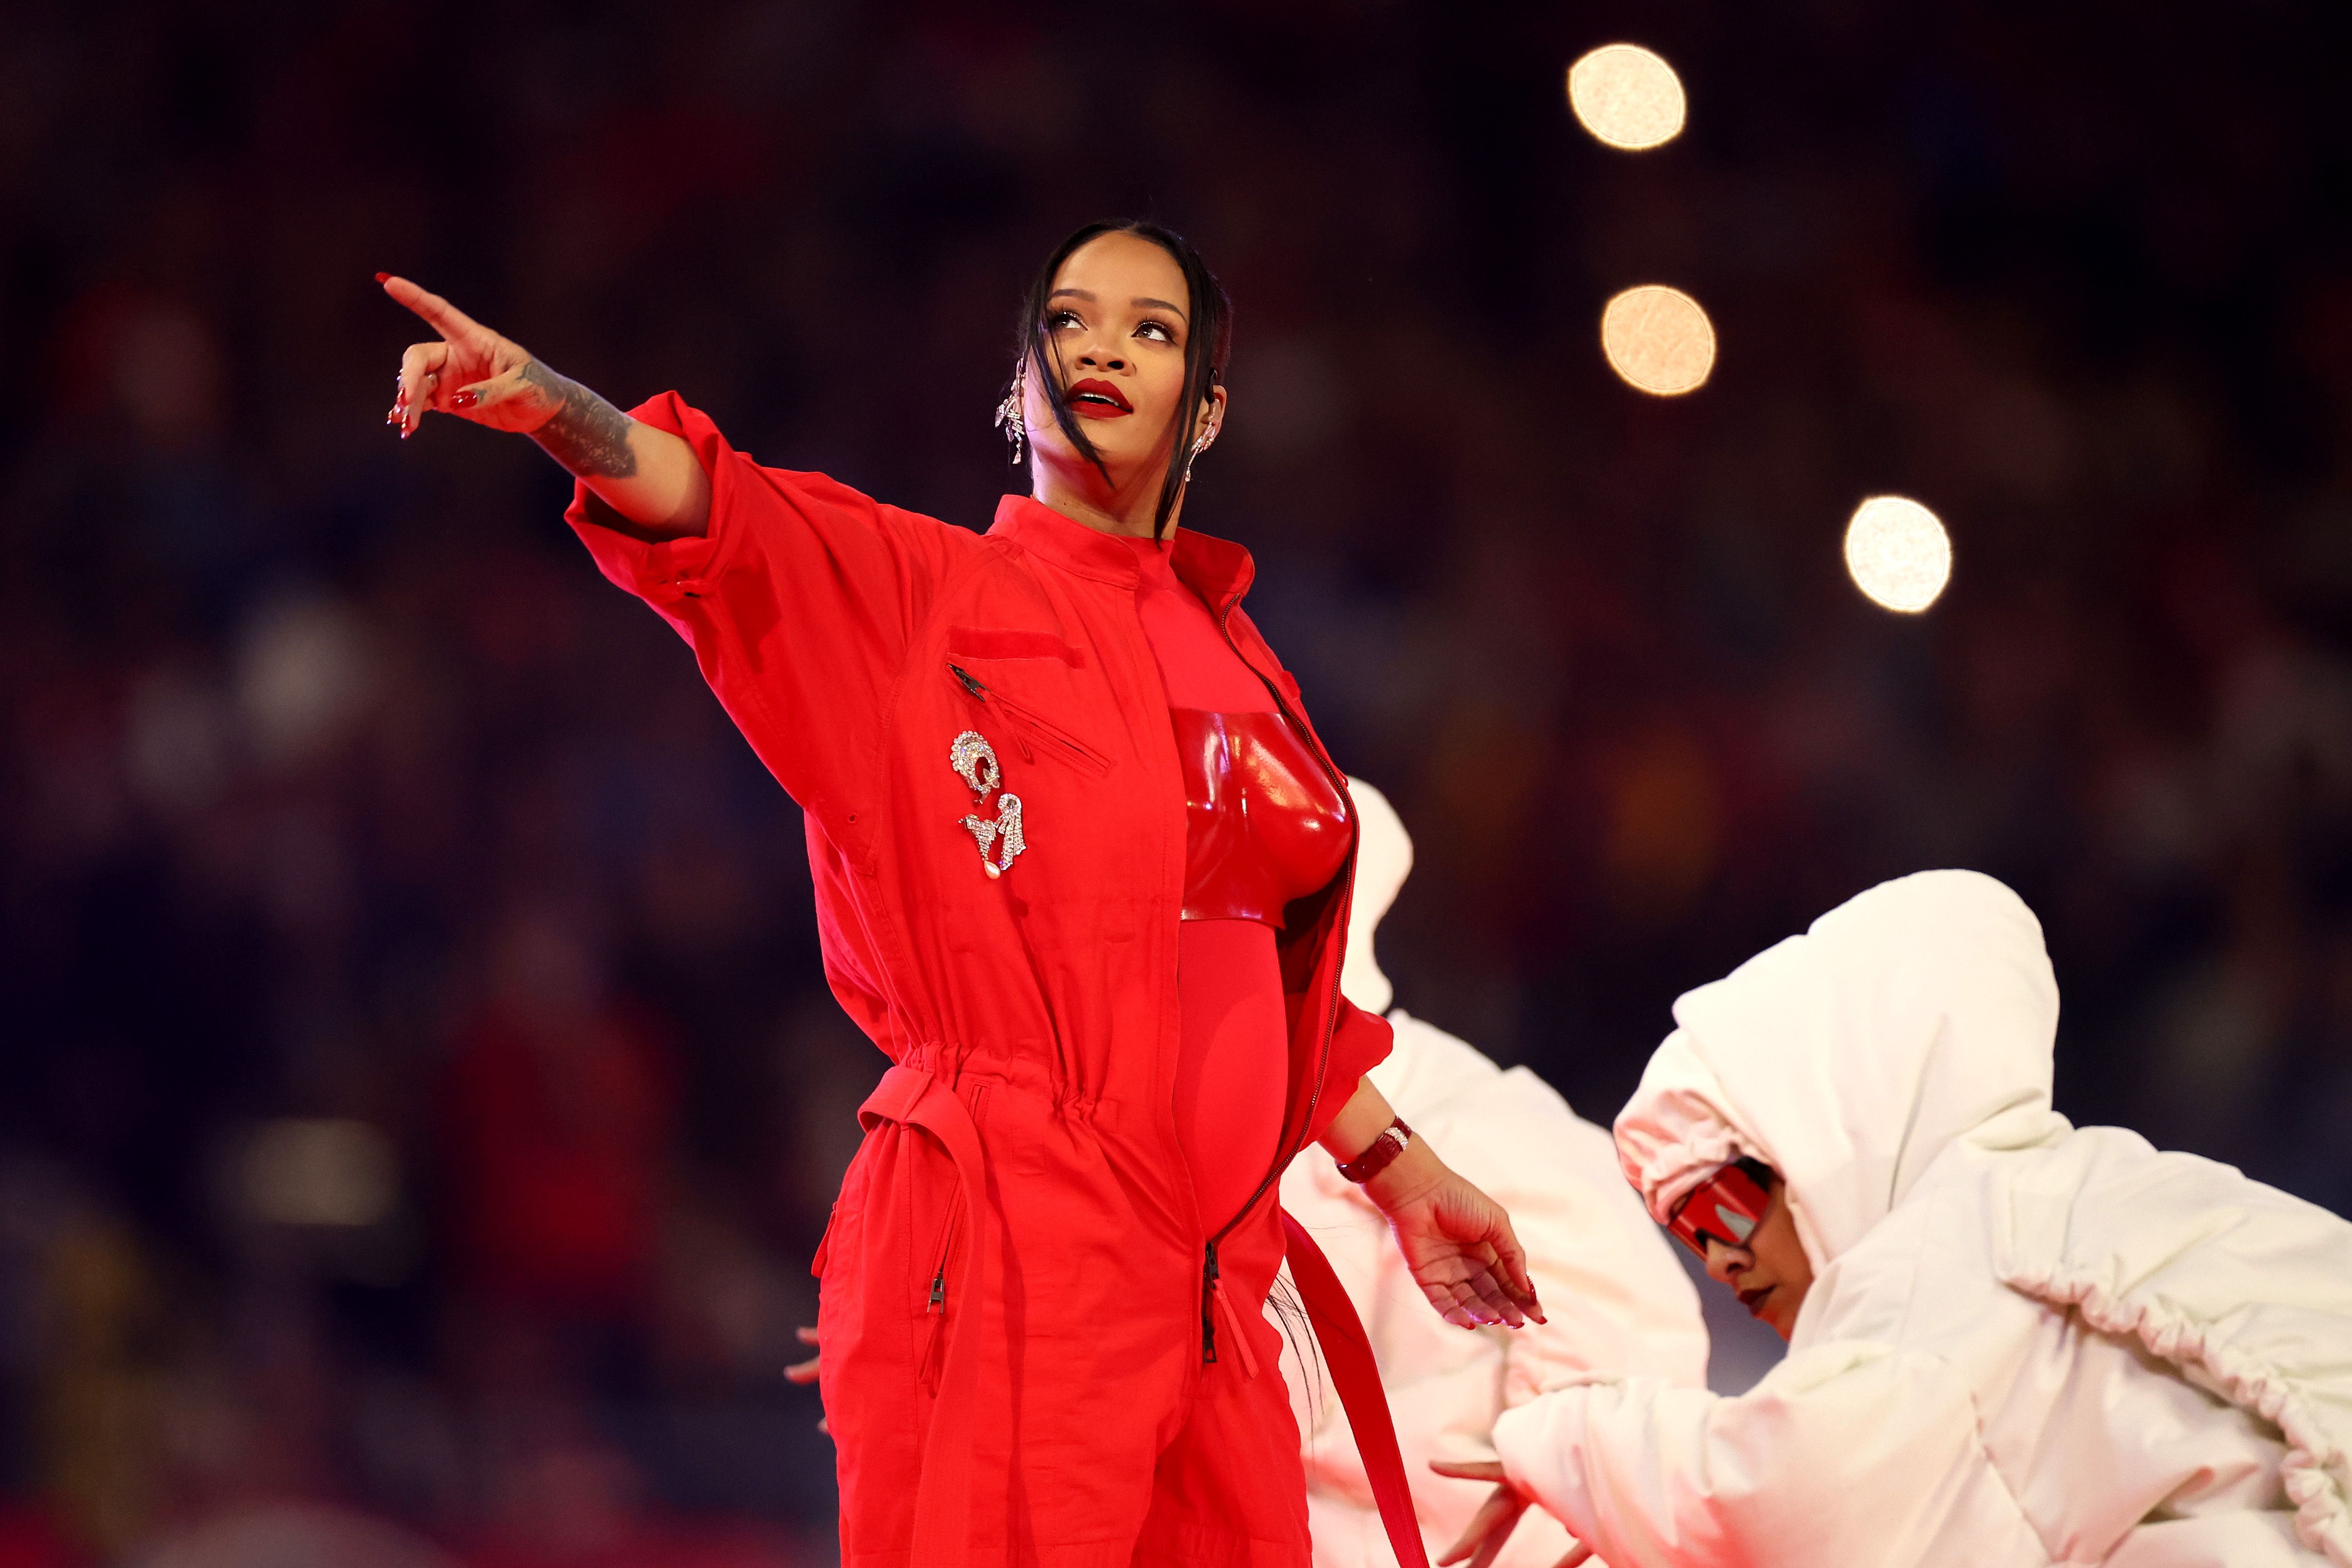 Rihanna's White Eyeliner May Be a New Fenty Beauty Product